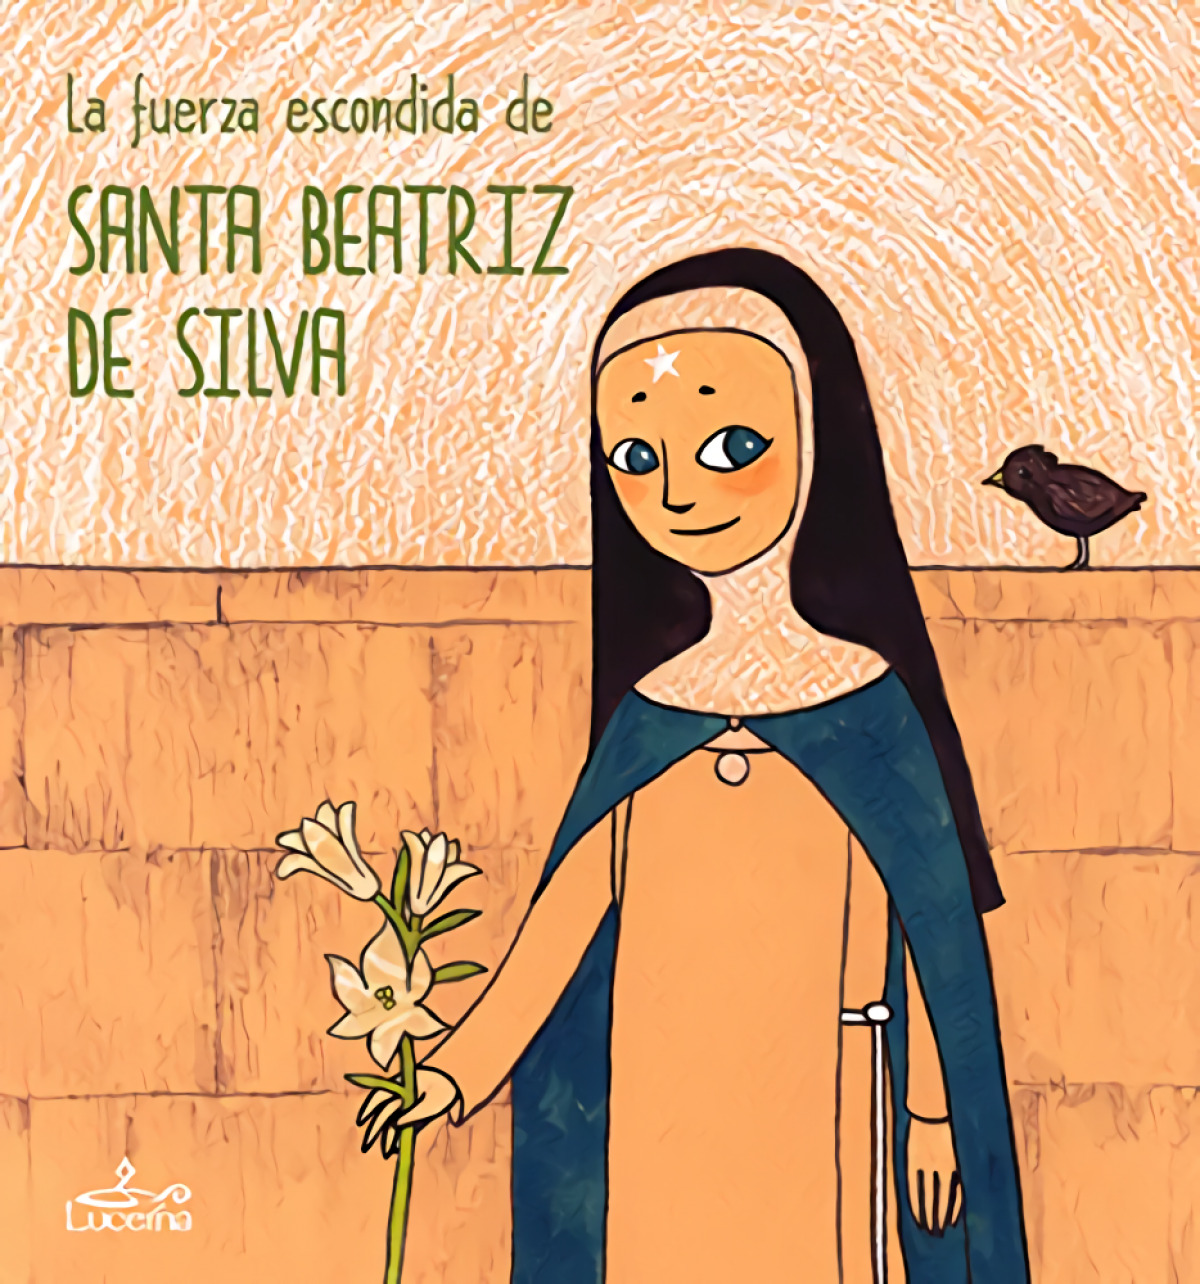 La fuerza escondida de Santa Beatriz de Silva